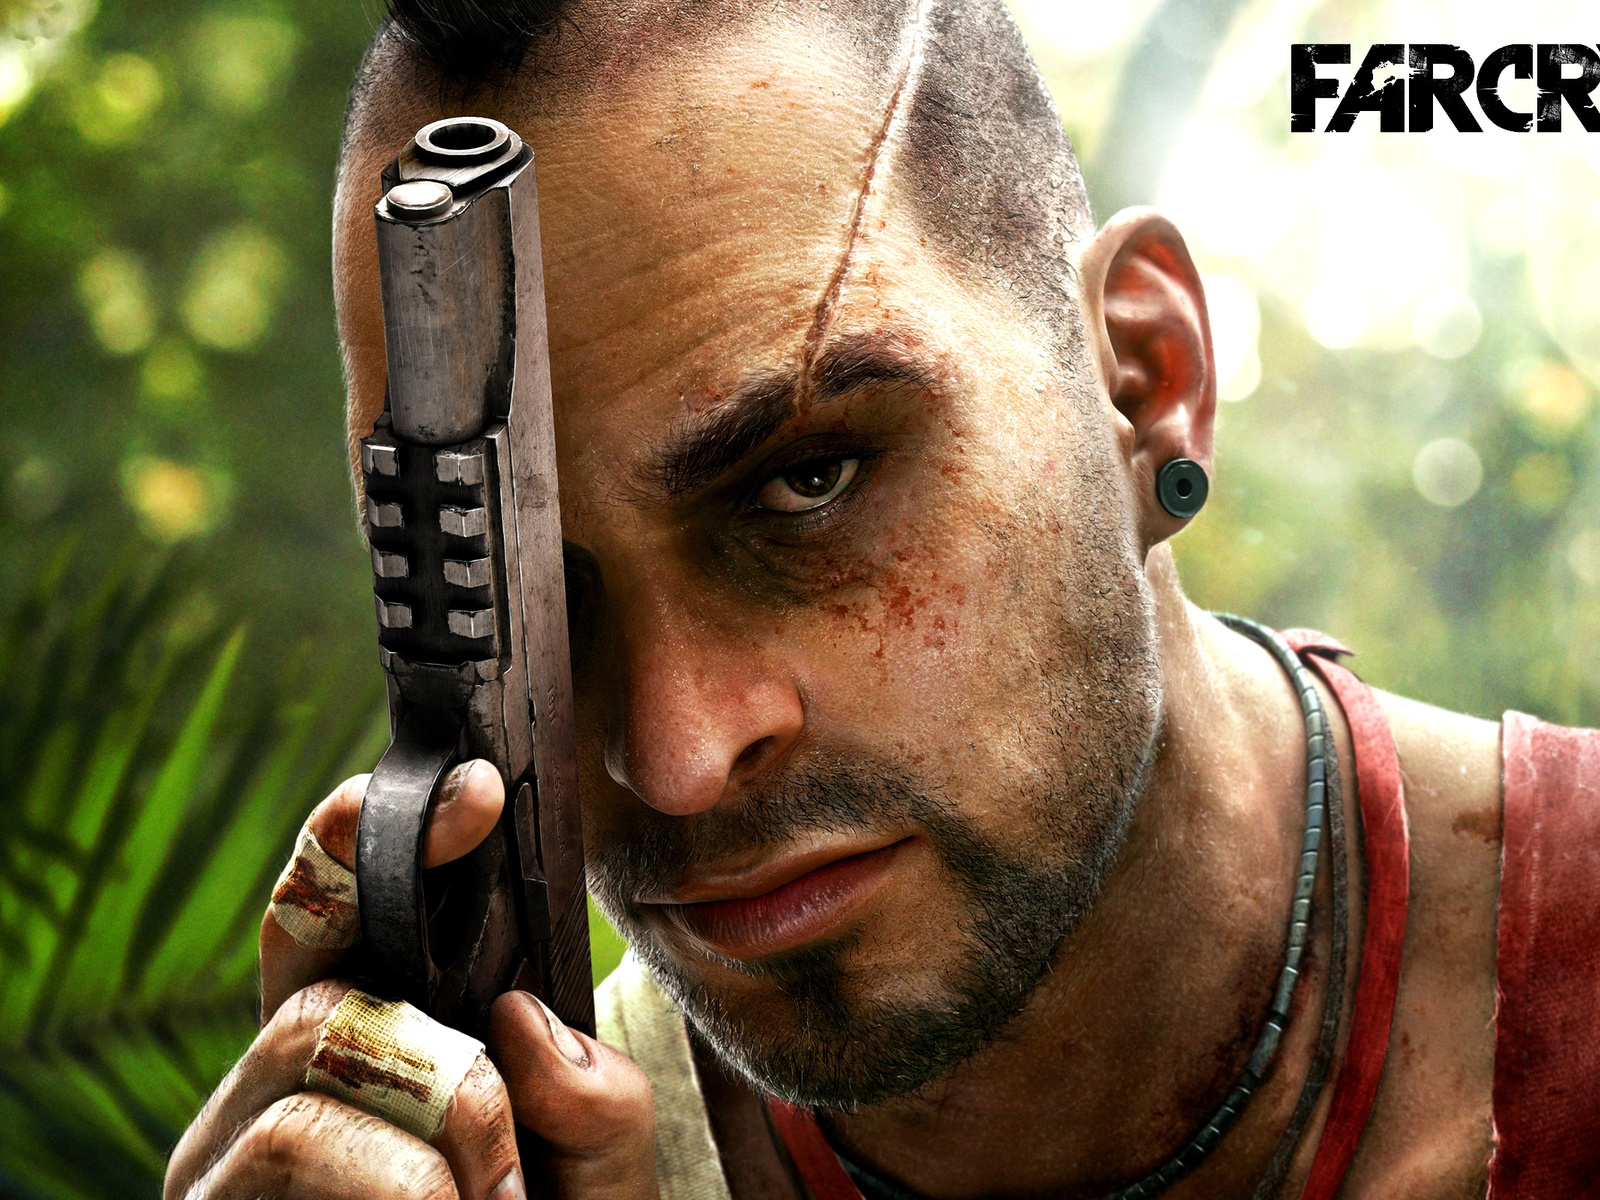 Скачать обои Far Cry 2 на телефон бесплатно